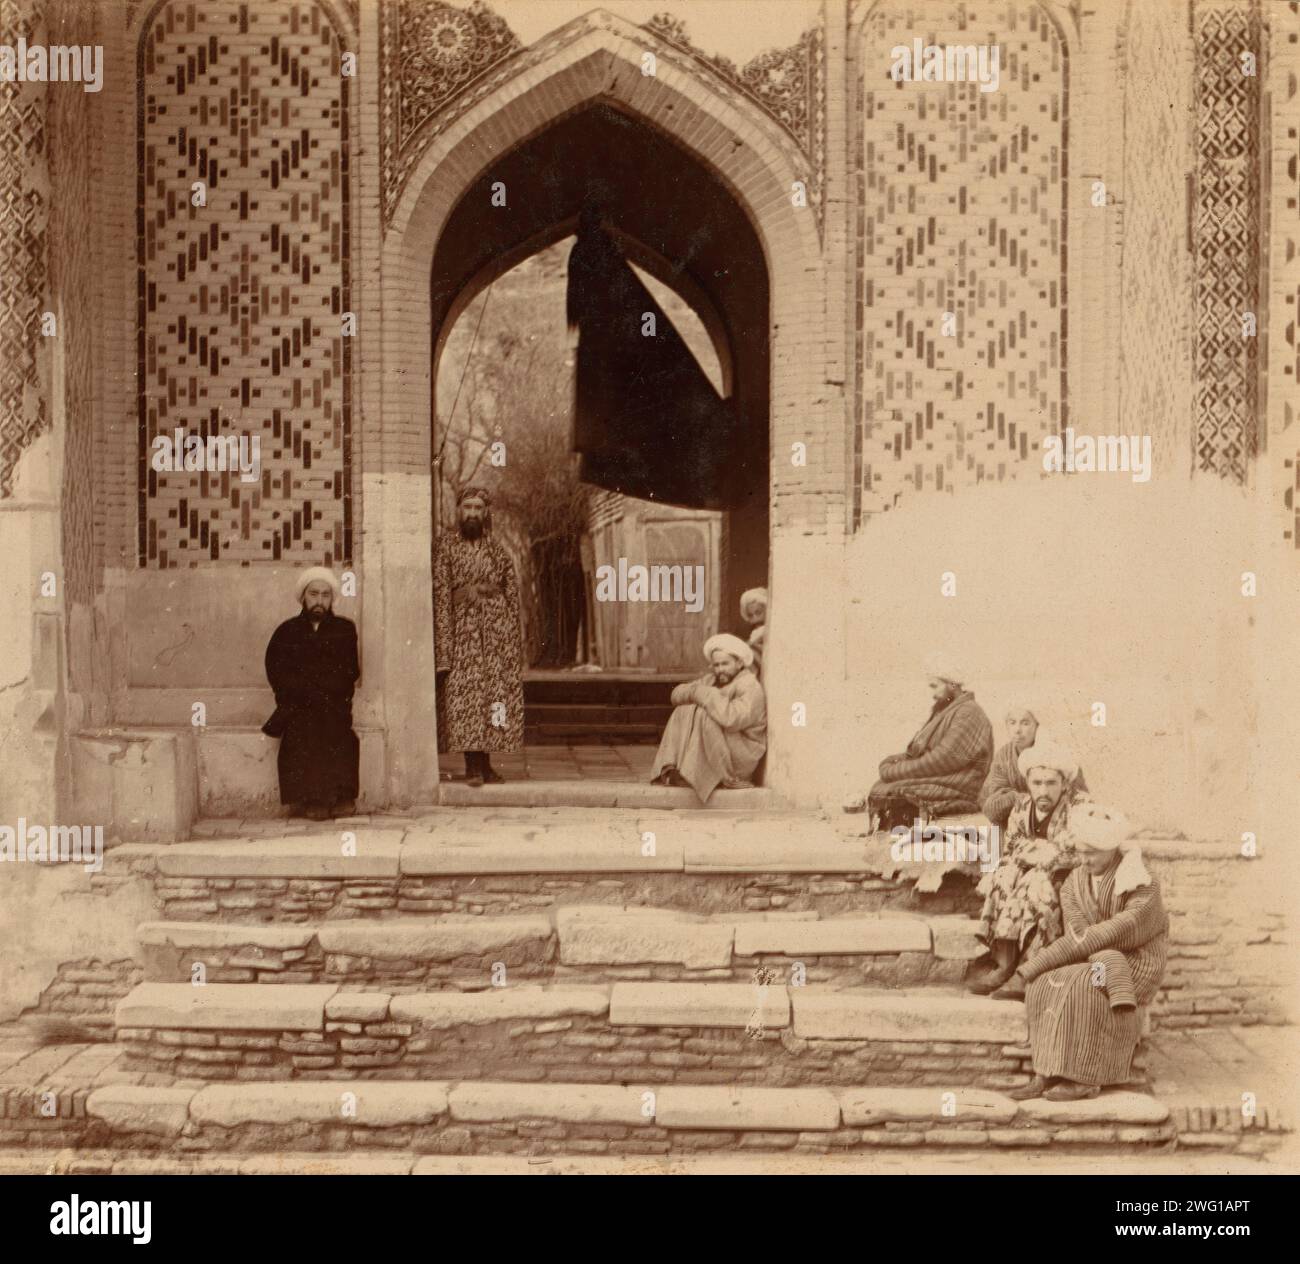 Am Eingang zu Shakh-i Zindeh, Samarkand, zwischen 1905 und 1915. Die Männer saßen unter dem Bogengang. Im Album: Views in Central Asia, Russian Empire, LOT 10338, No 56. Stockfoto